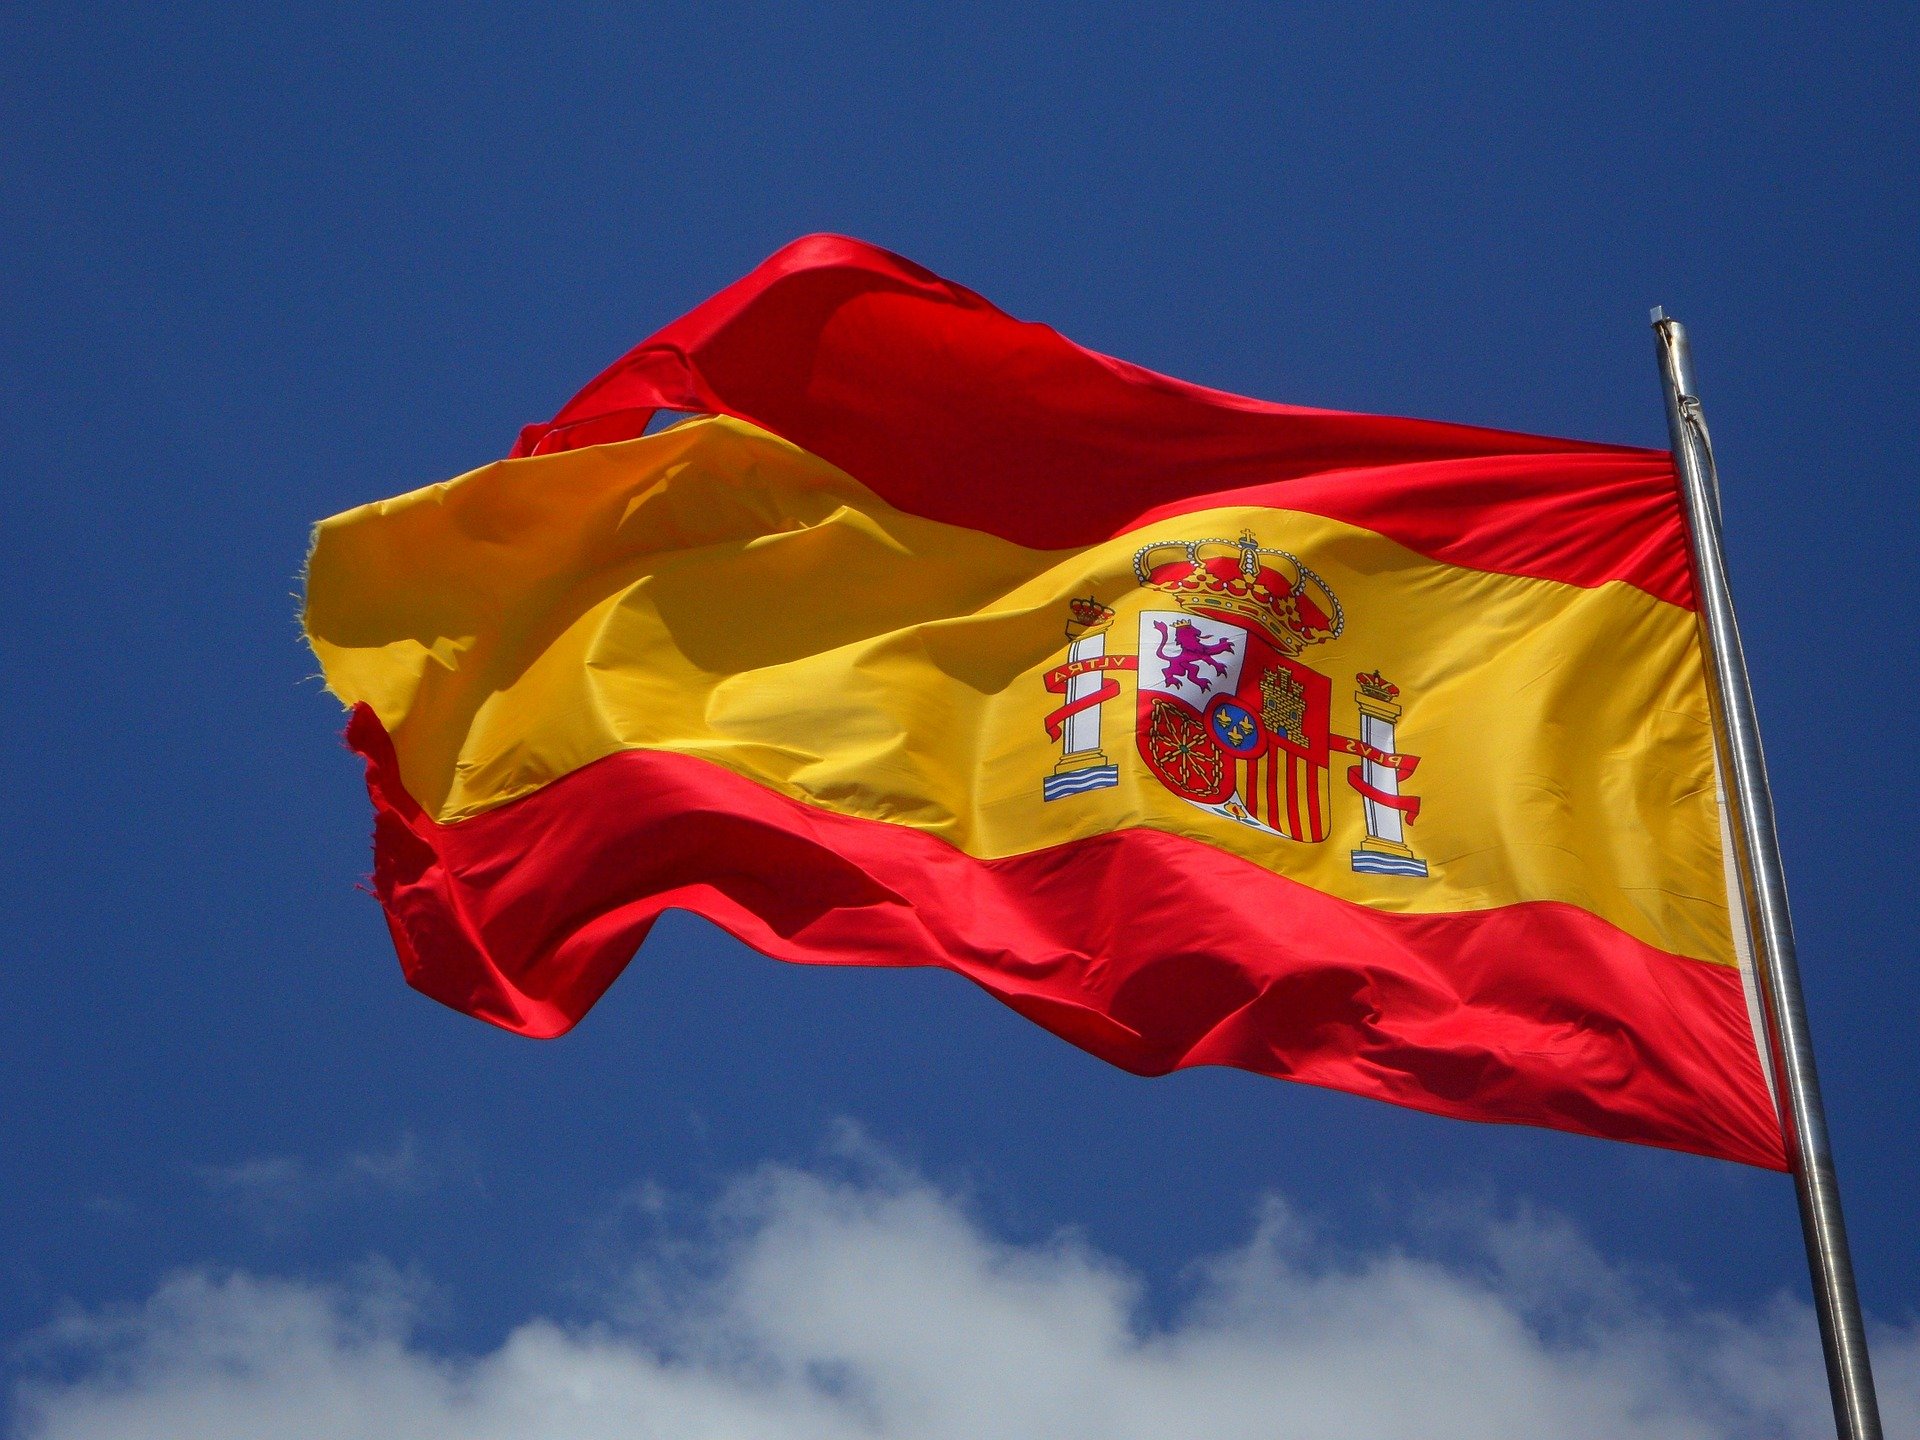 L'himne d'Espanya: possible origen andalusí?